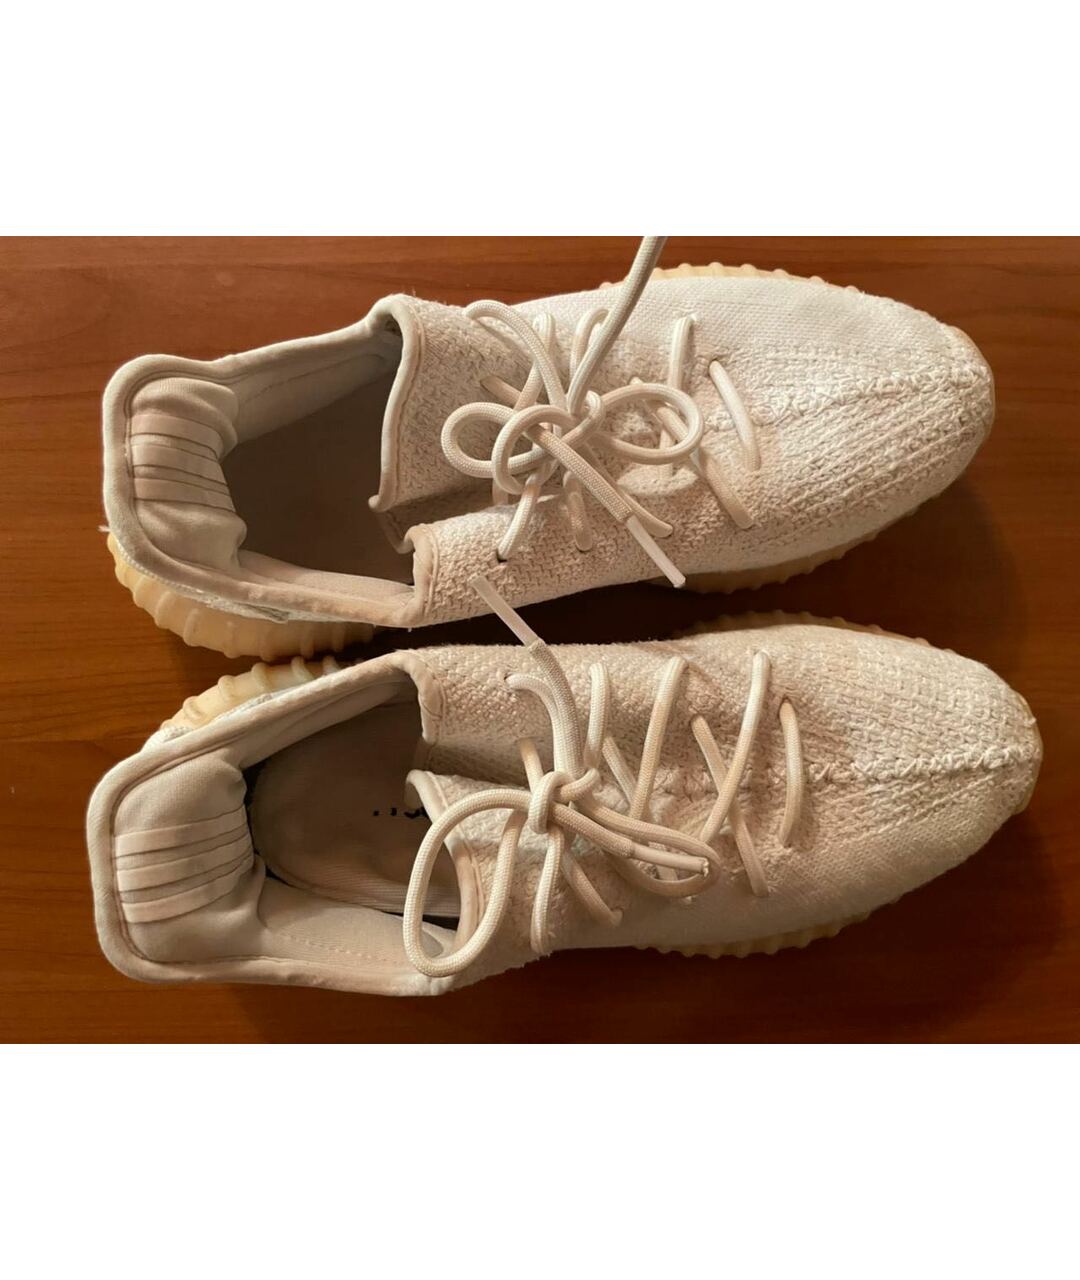 ADIDAS YEEZY Белые низкие кроссовки / кеды, фото 2